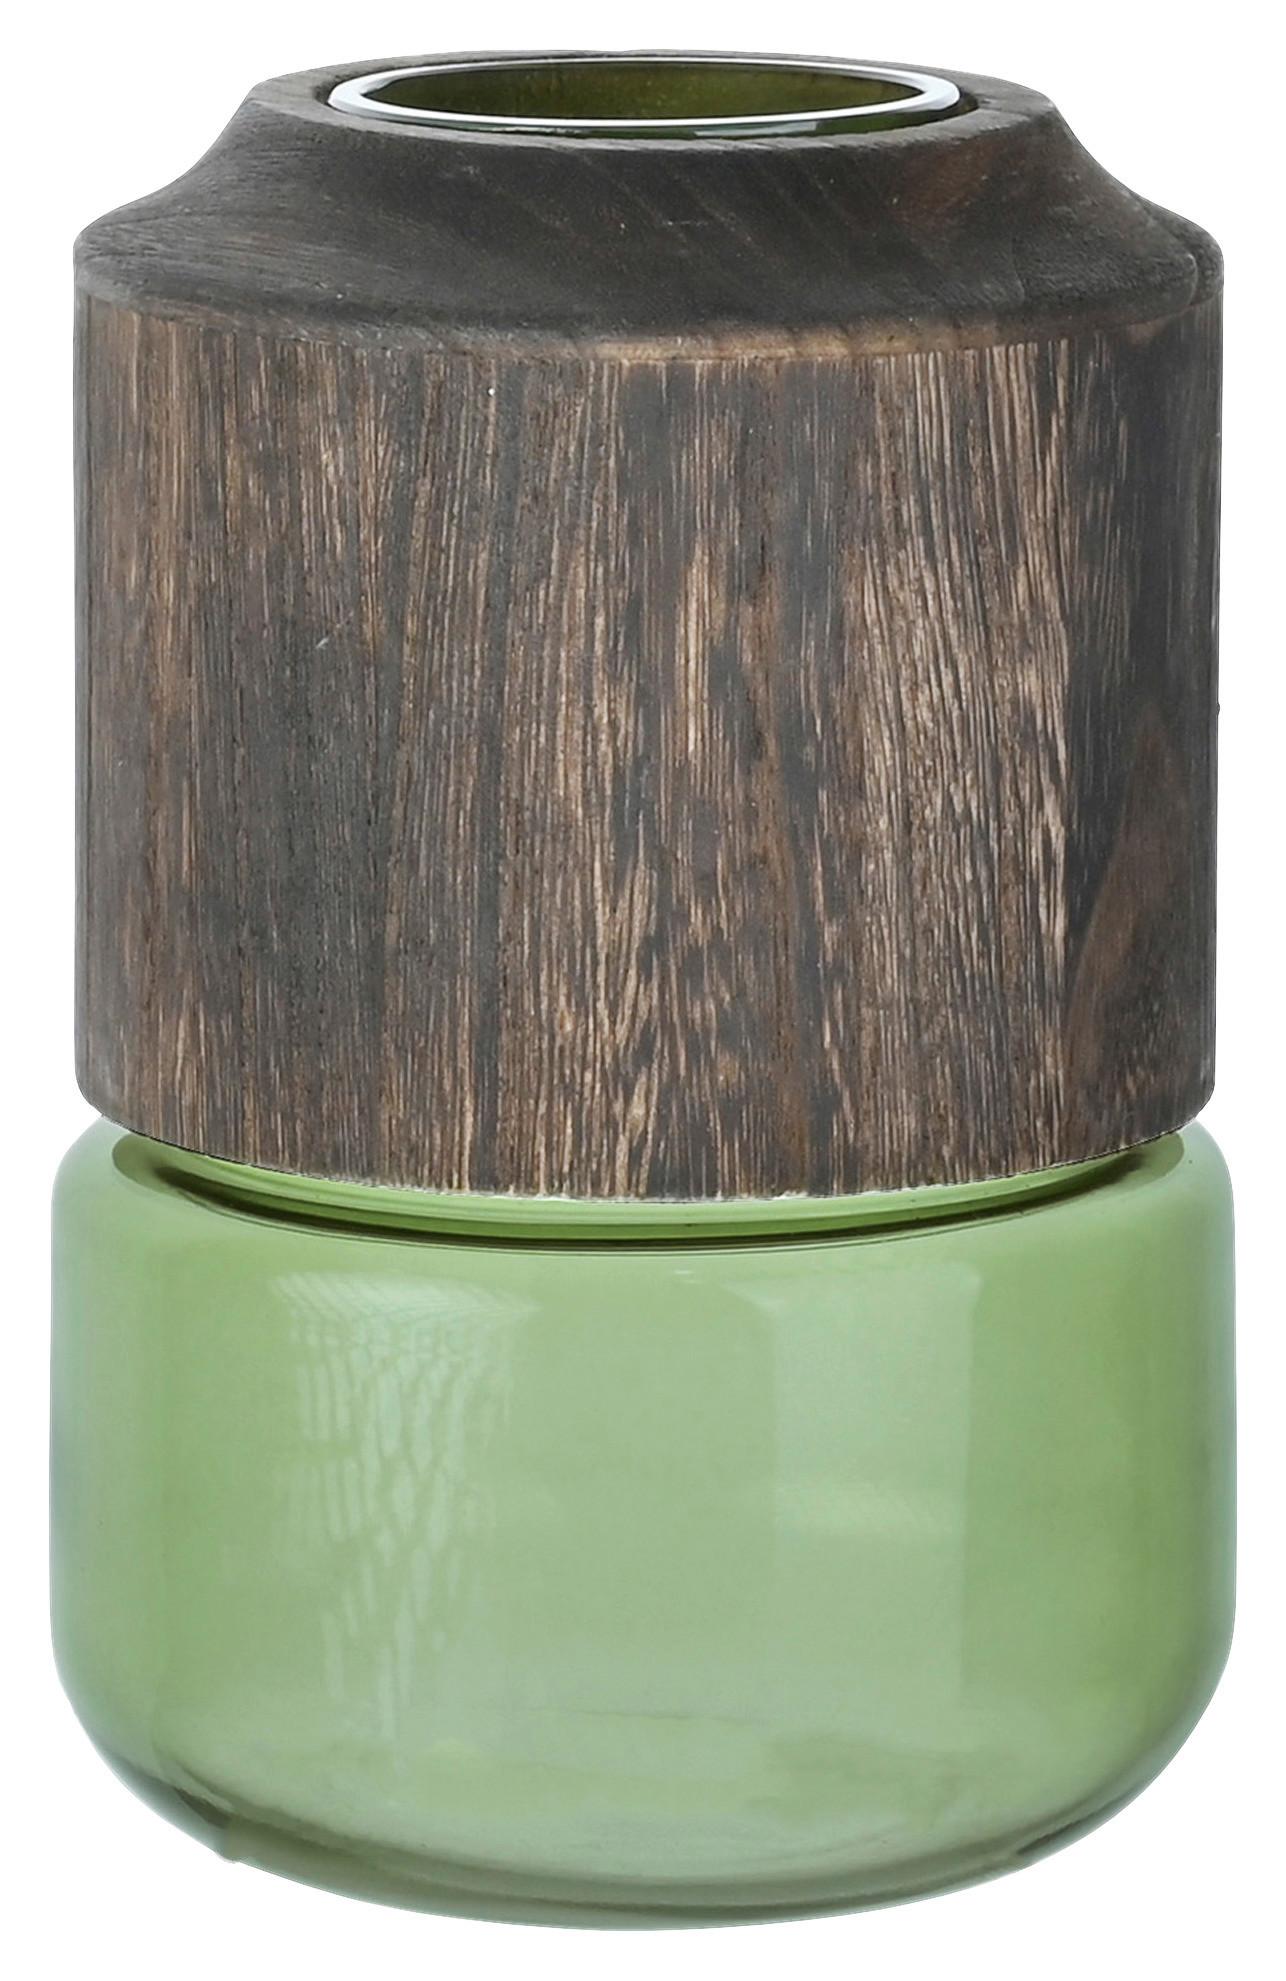 Vaza Wood -Paz- - zelena/rjava, steklo/les (13,5/20cm) - Premium Living